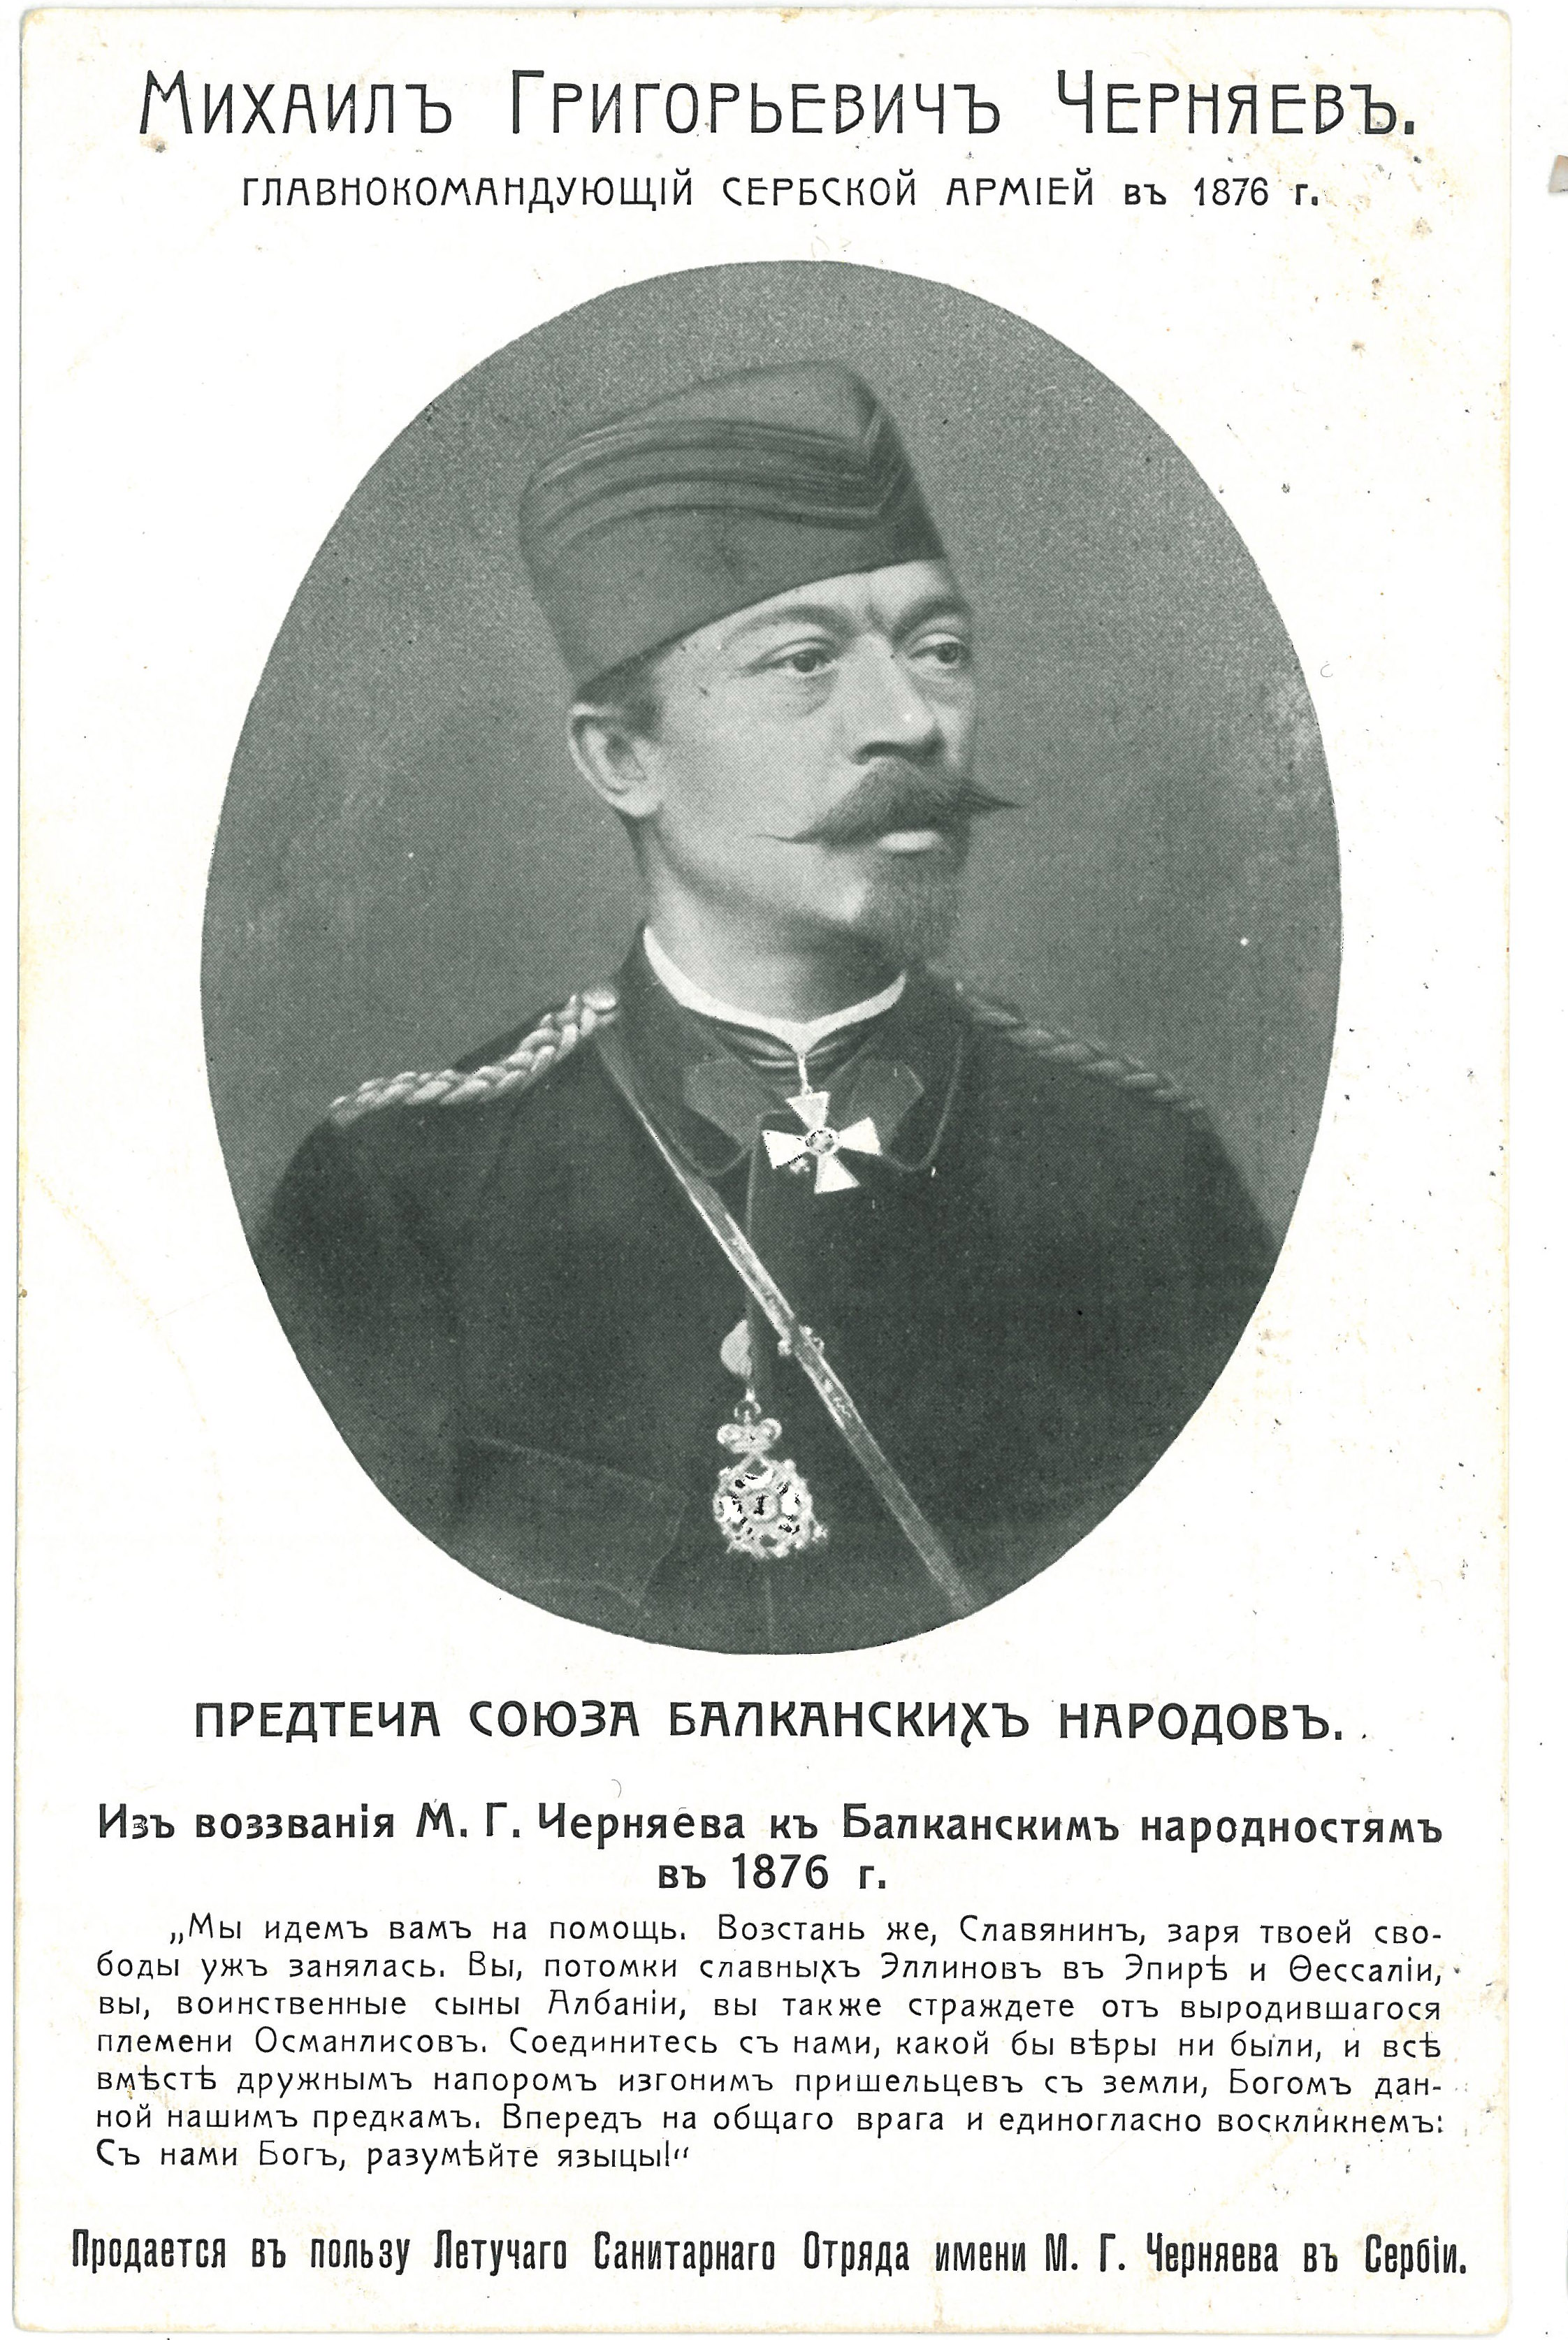 Михаил Григорьевич Черняев